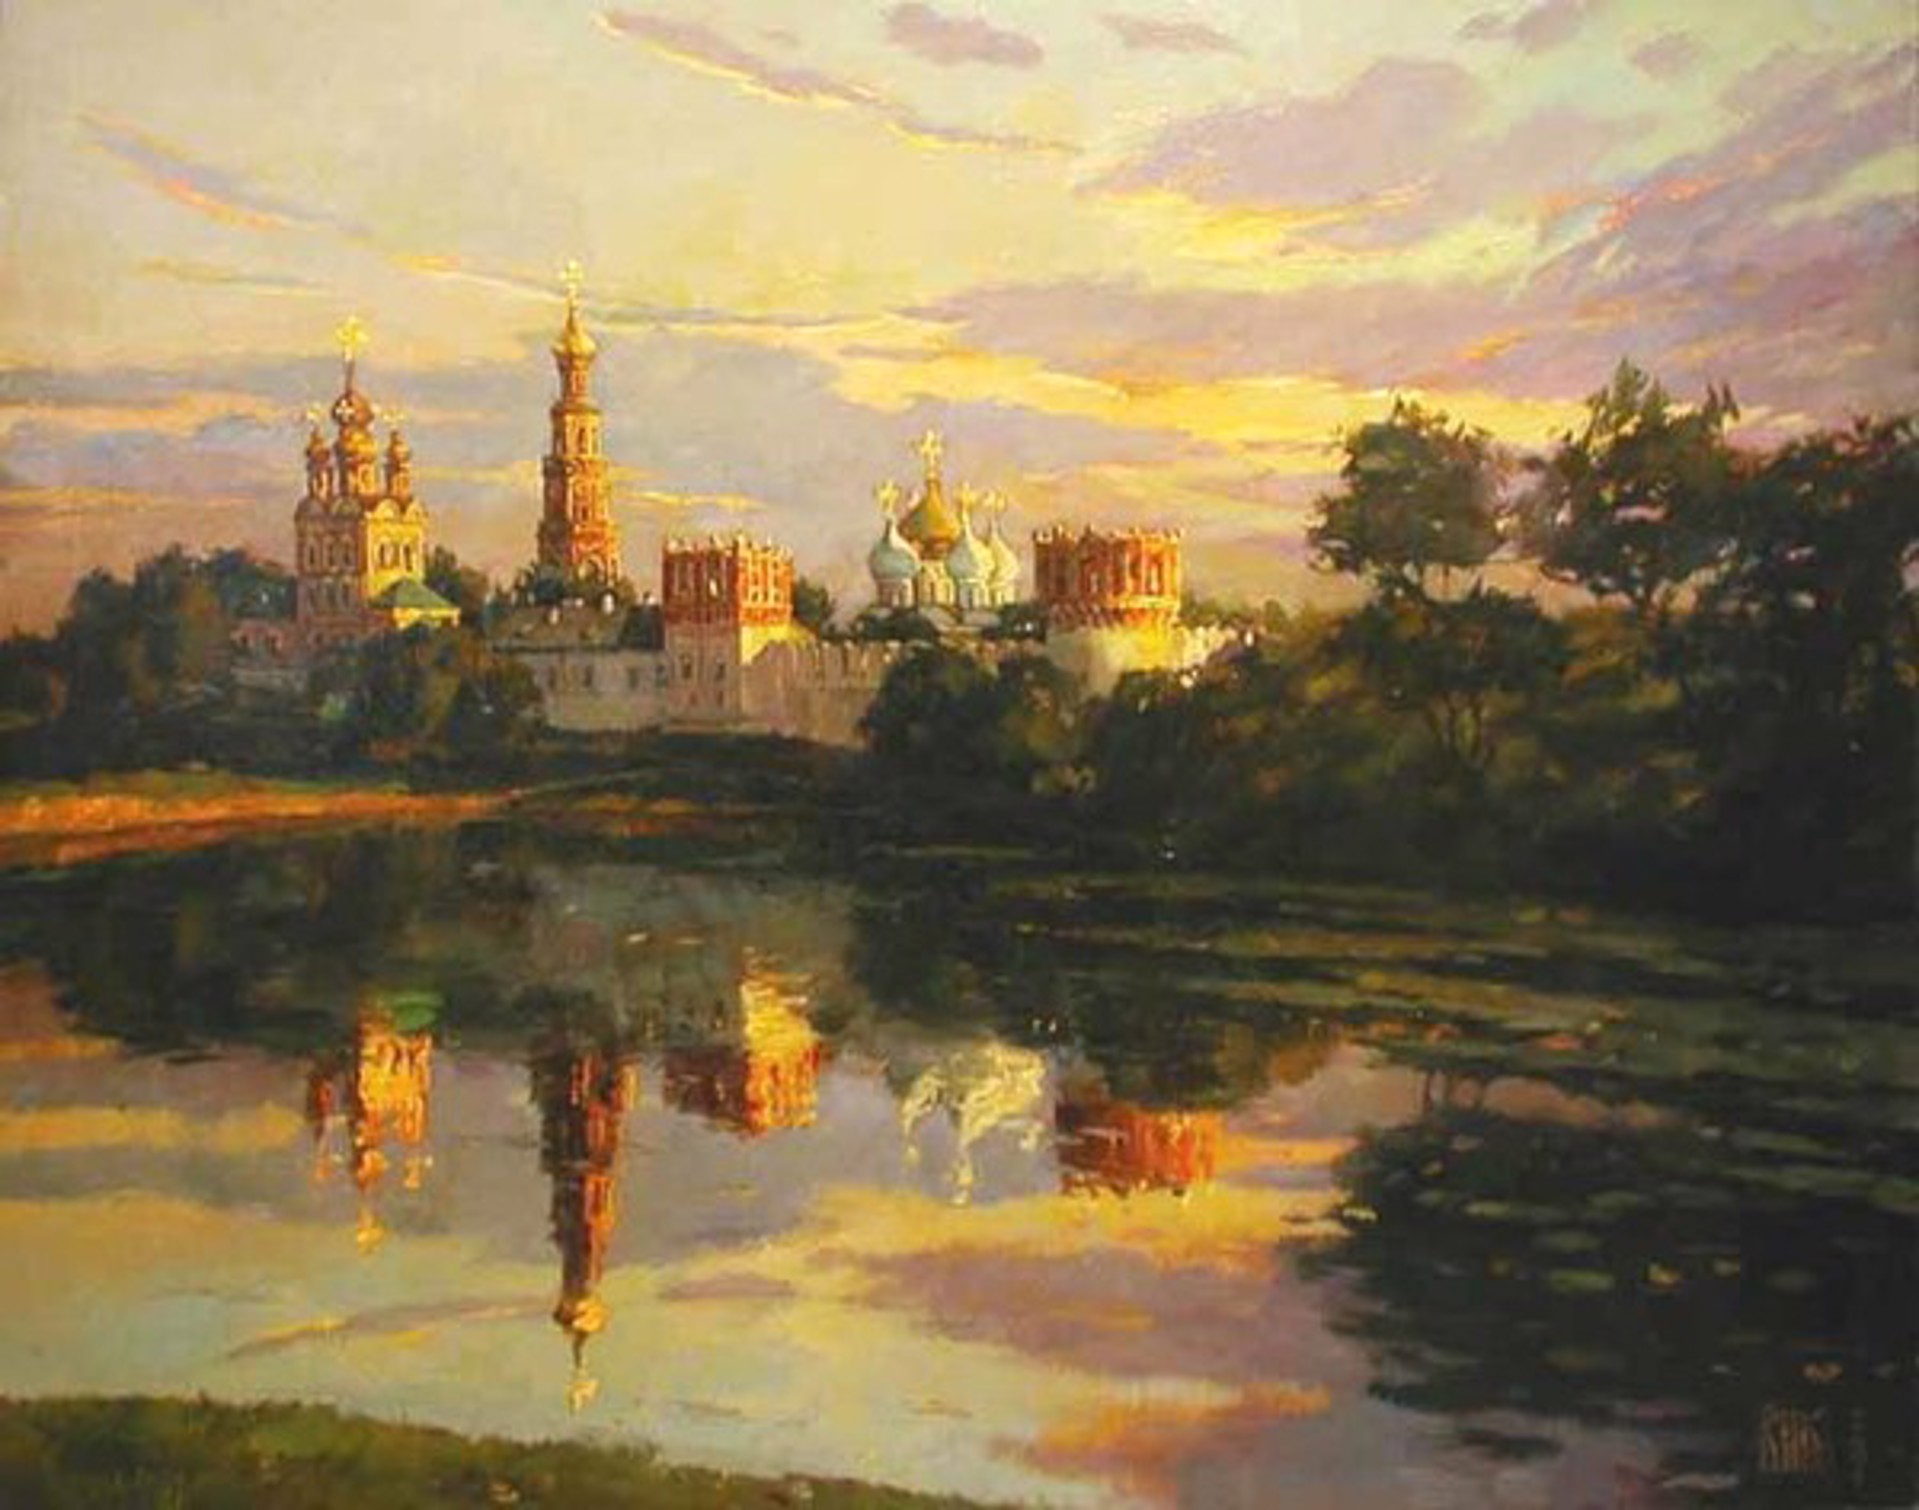 Novdovichiy Monastery by Ivan Vityuk